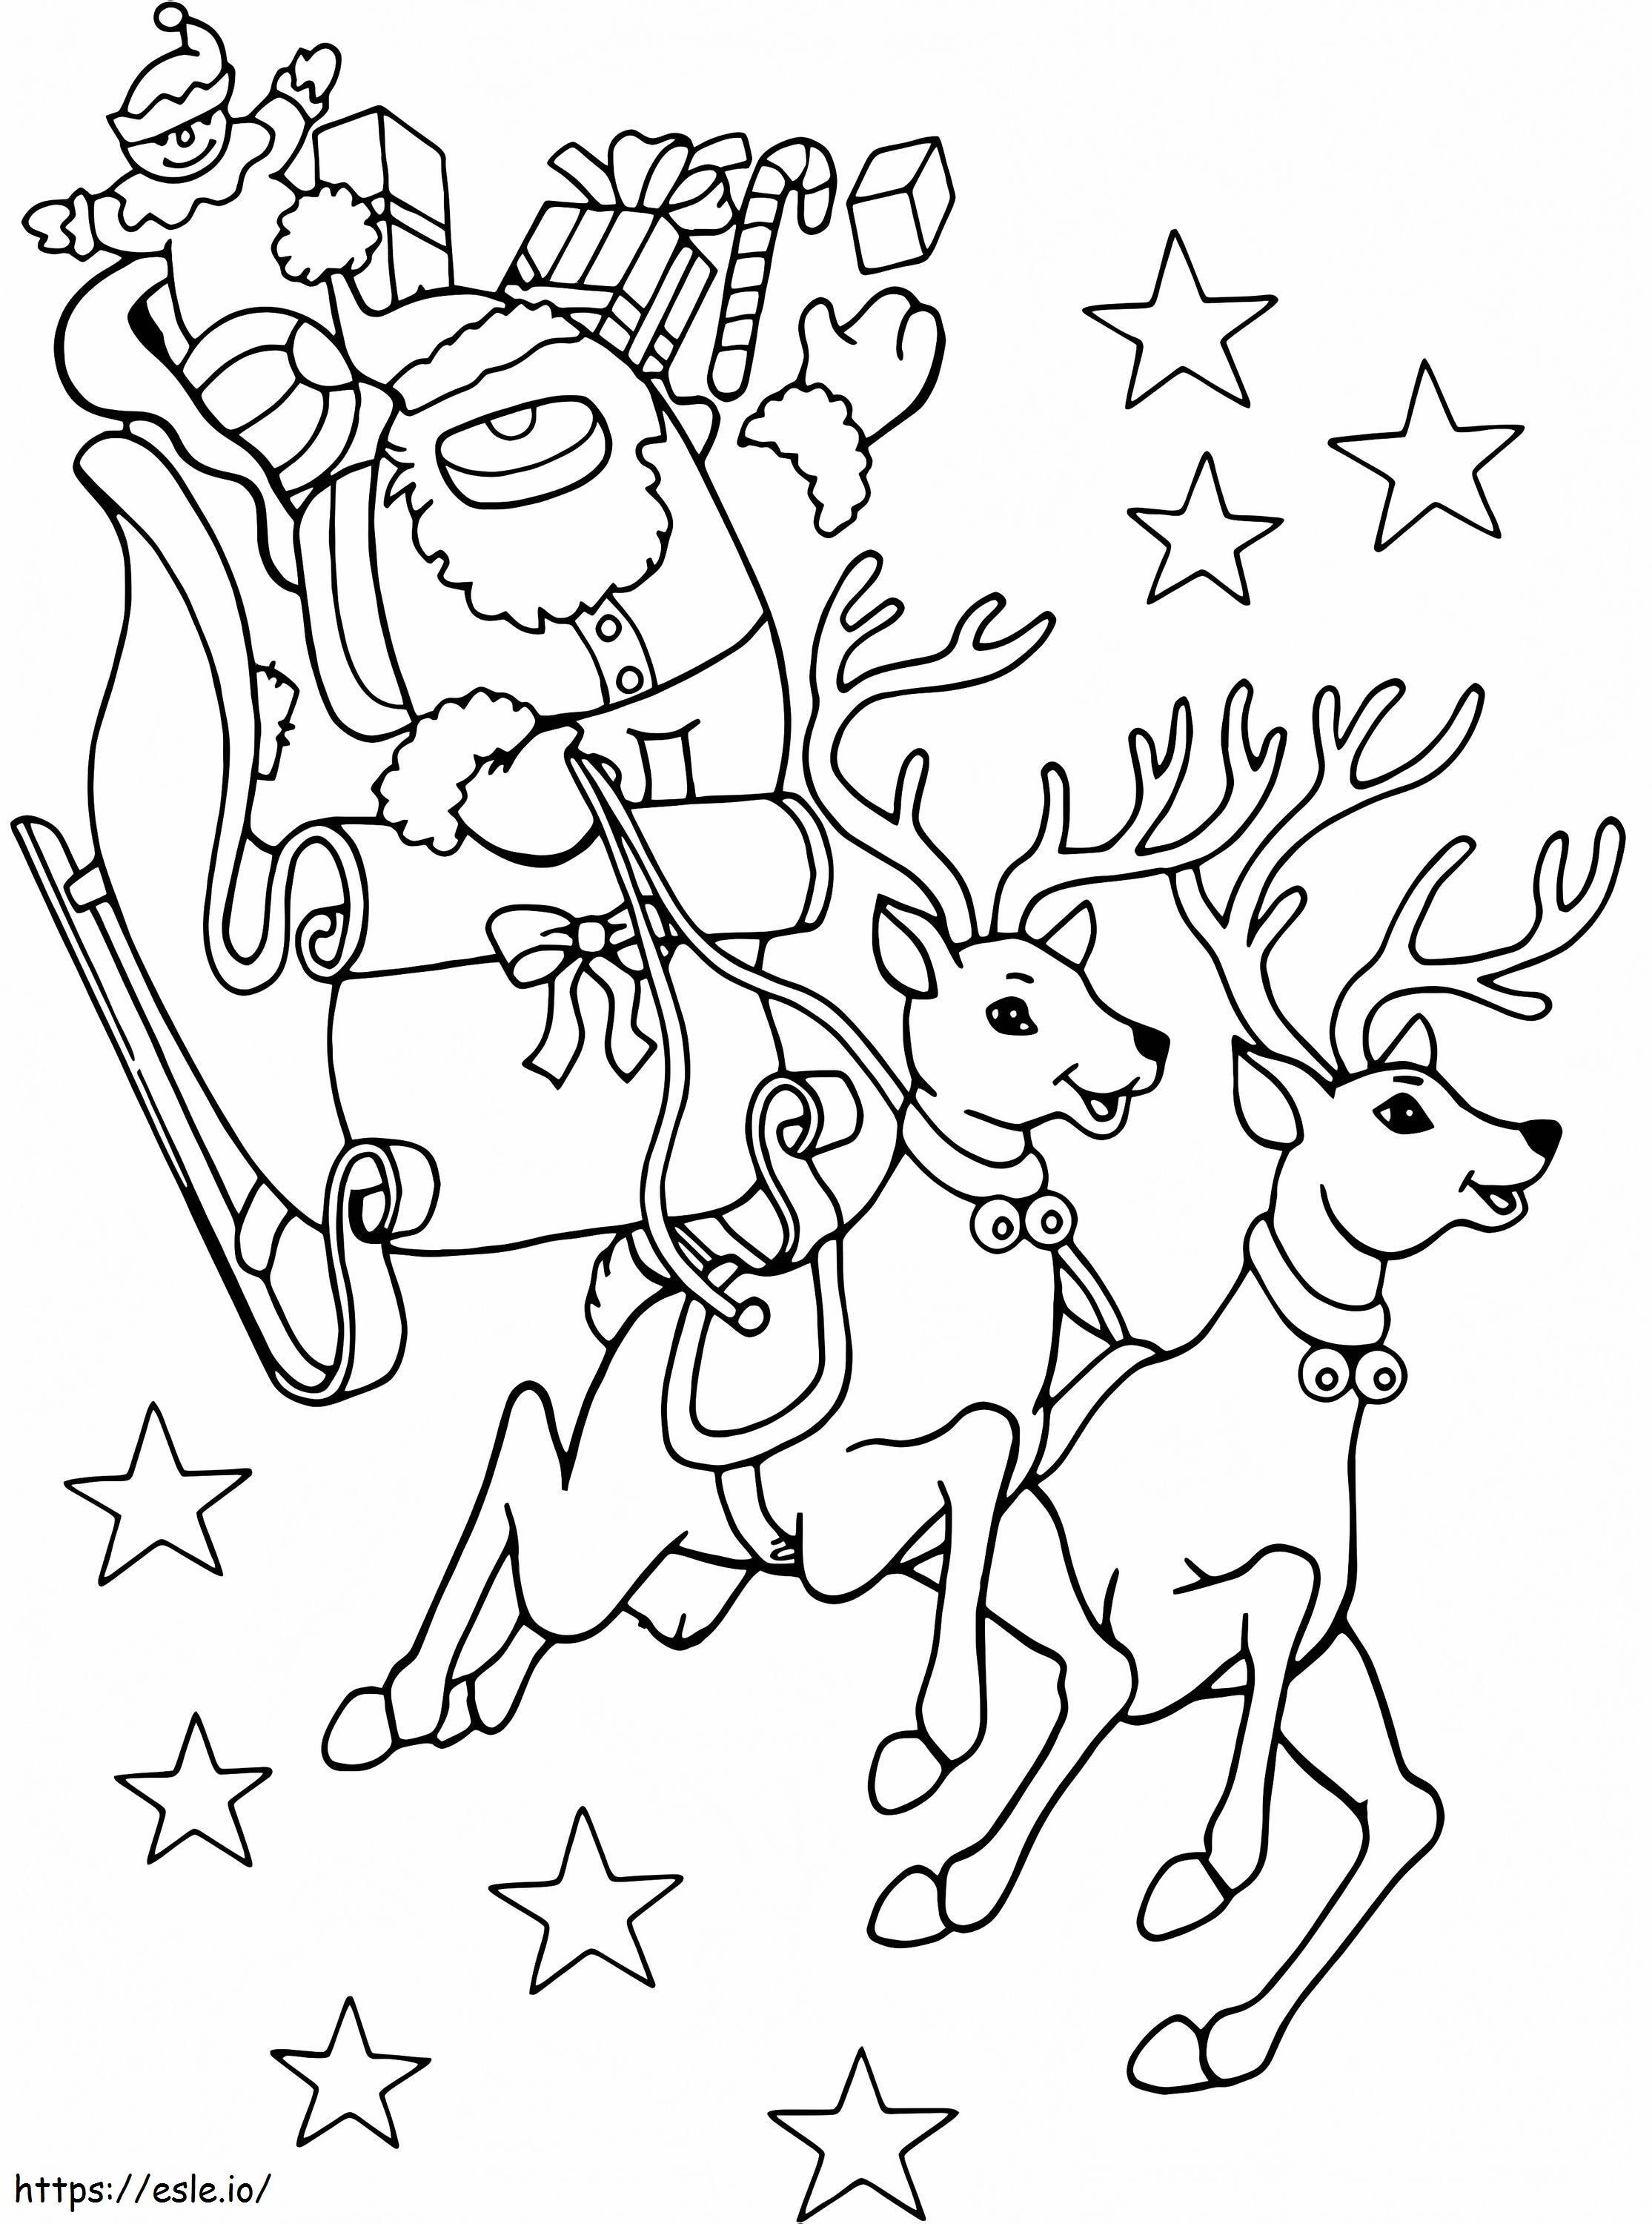 Christmas Among Us coloring page